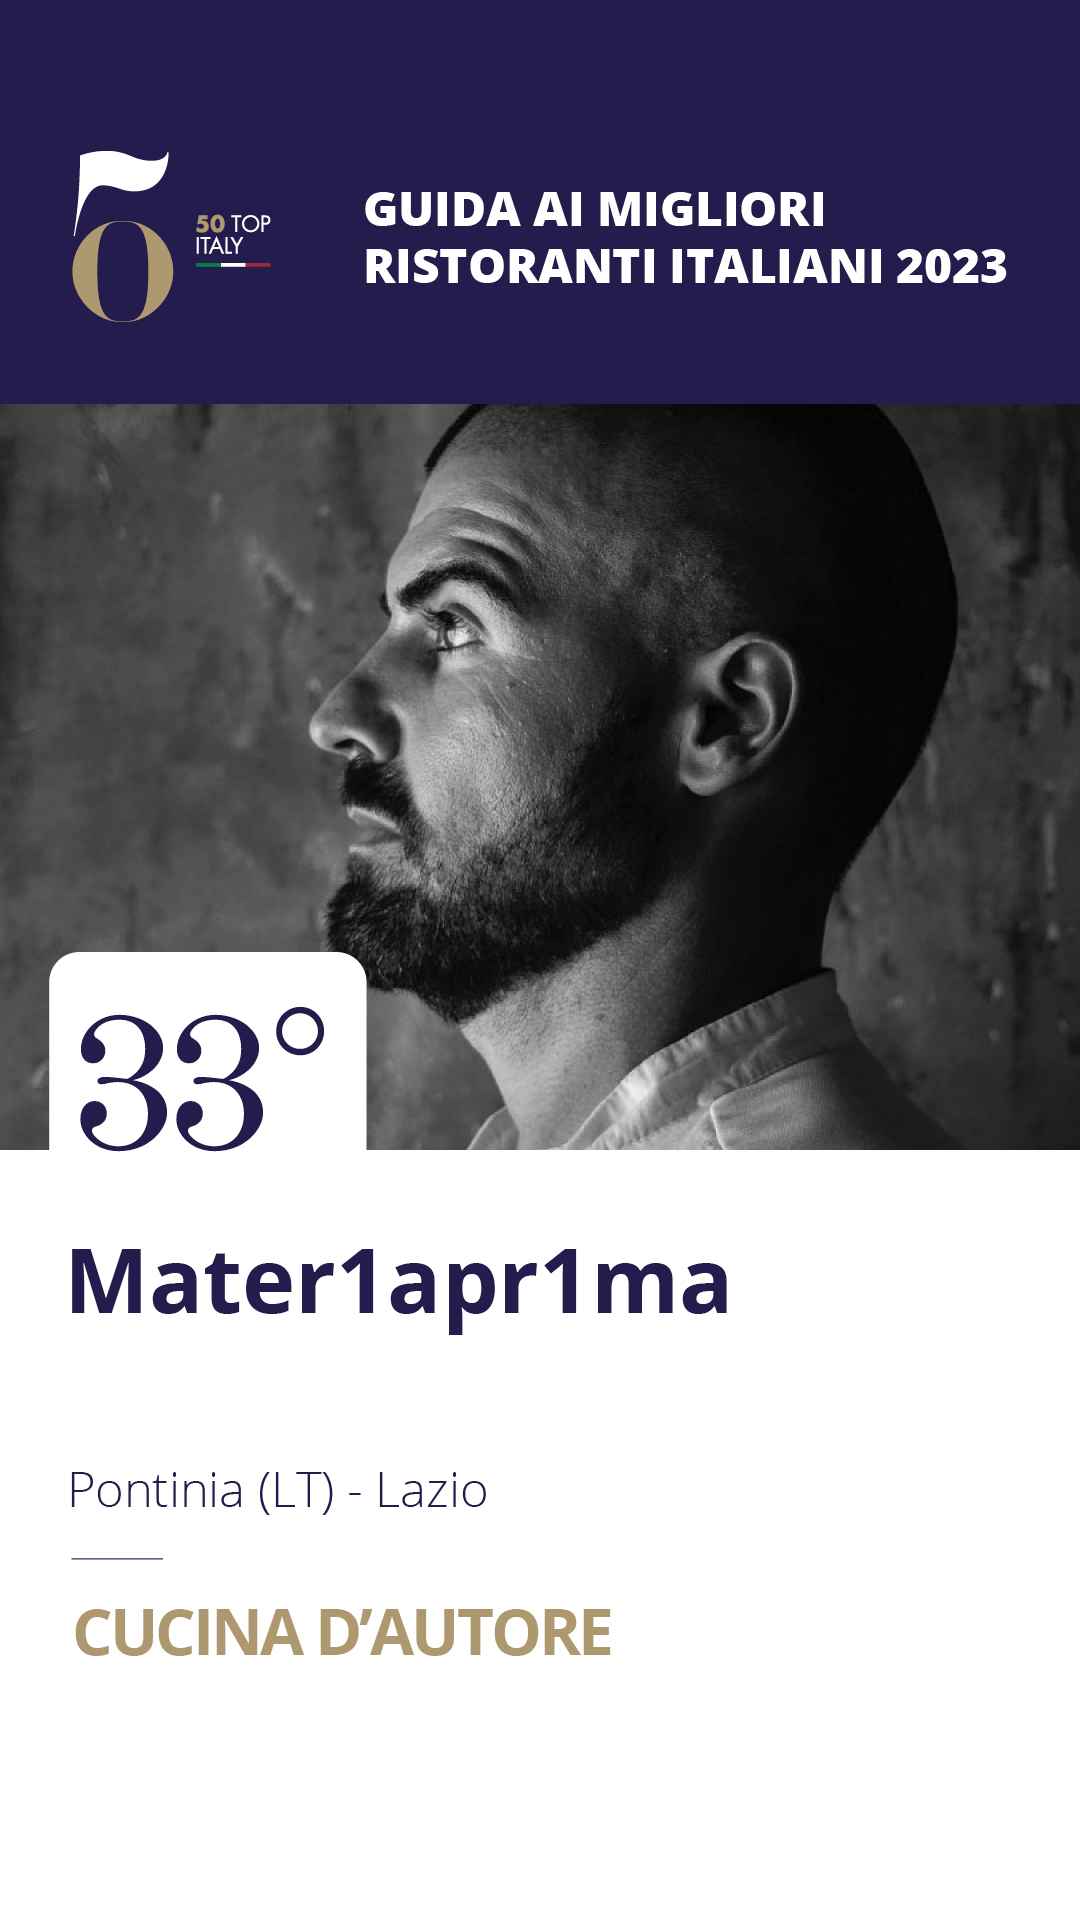 33 - Mater1apr1ma